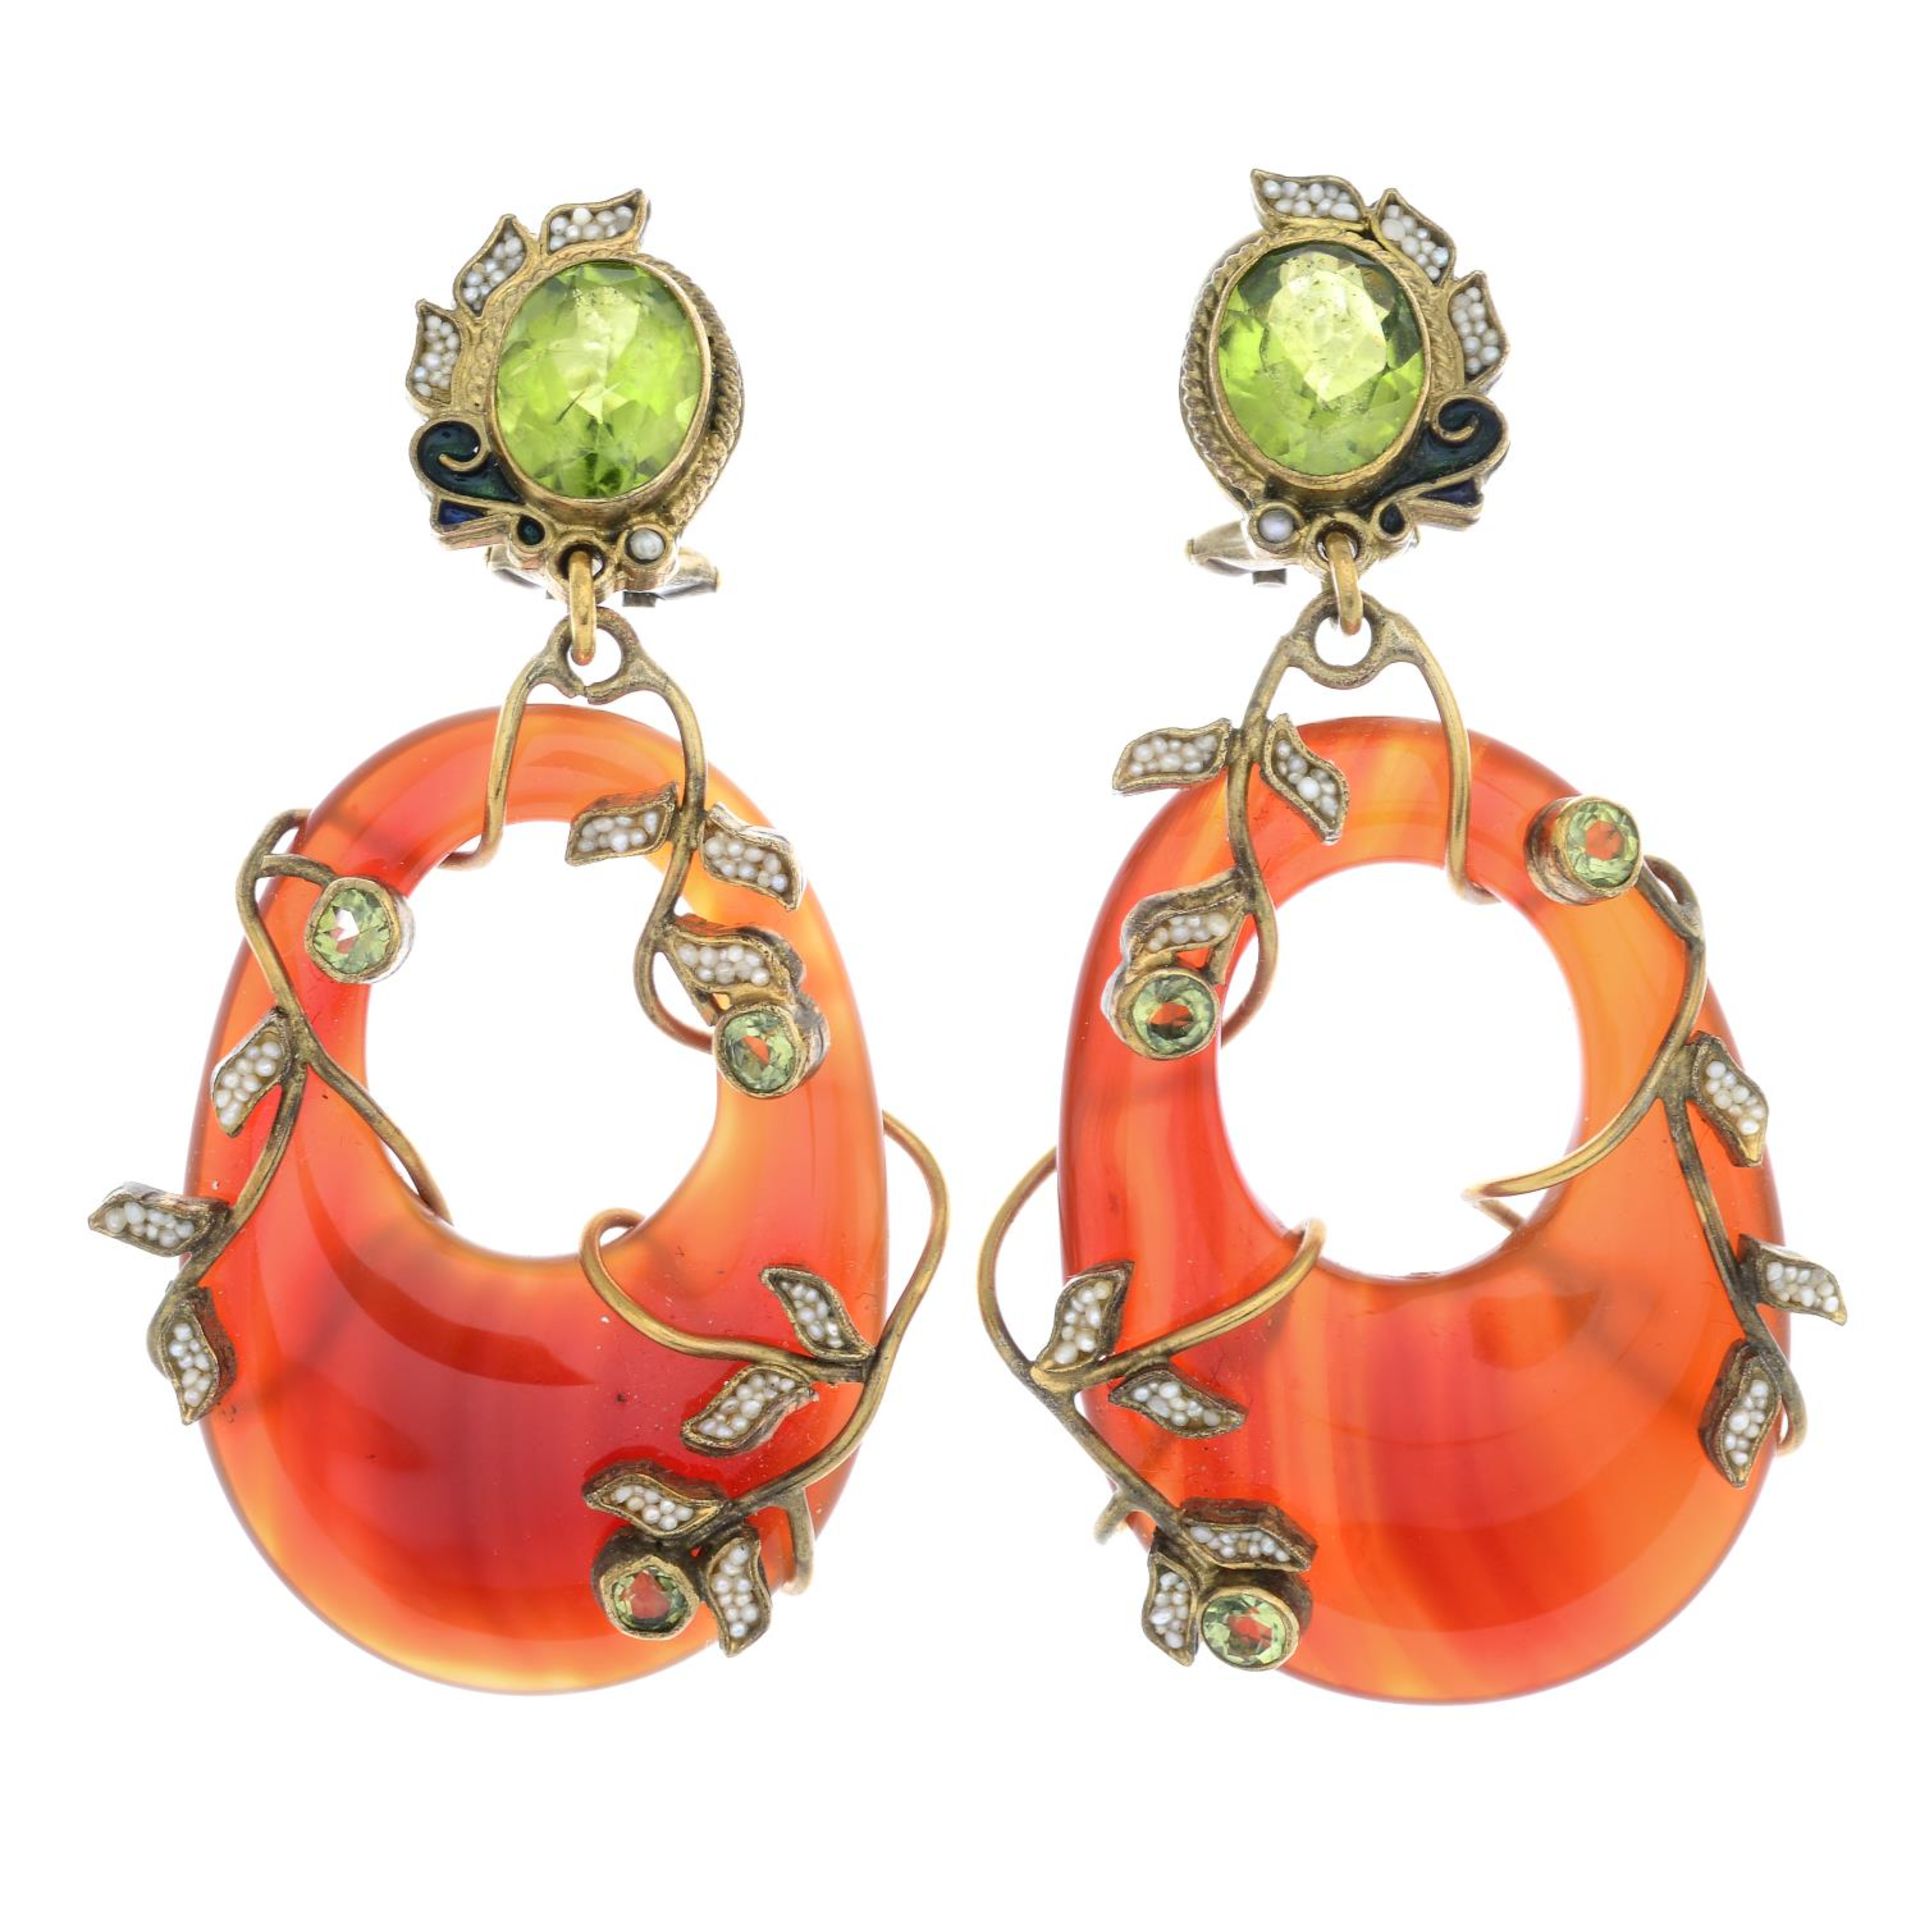 A pair of gem set earrings.